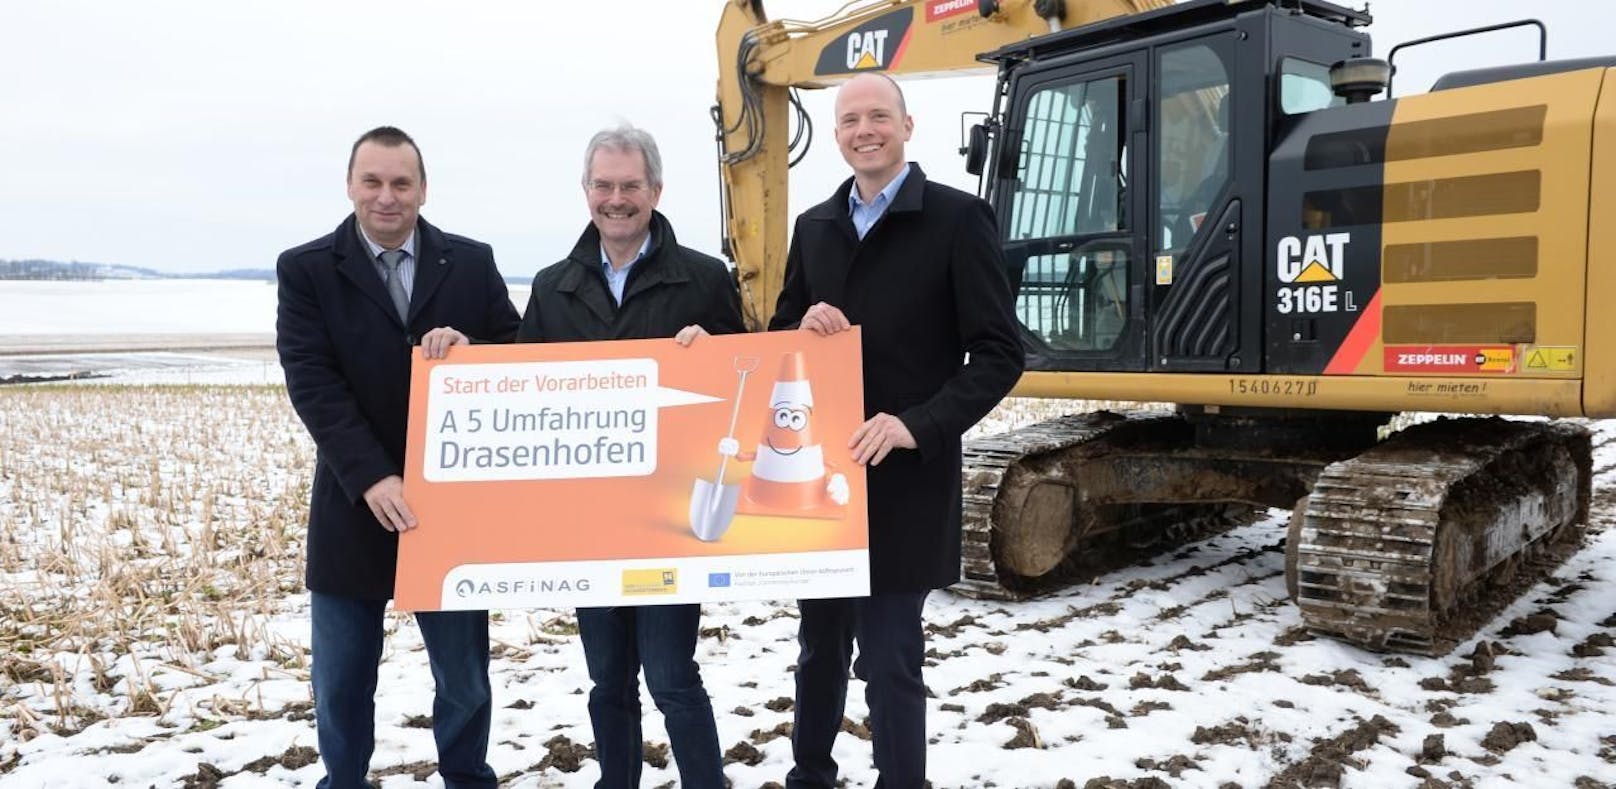 Start der Arbeiten: Reinhard Künzl (Bürgermeister Drasenhofen), Landesrat Karl Wilfing und Andreas Fromm (ASFINAG Geschäftsführer Bau Management GmbH).